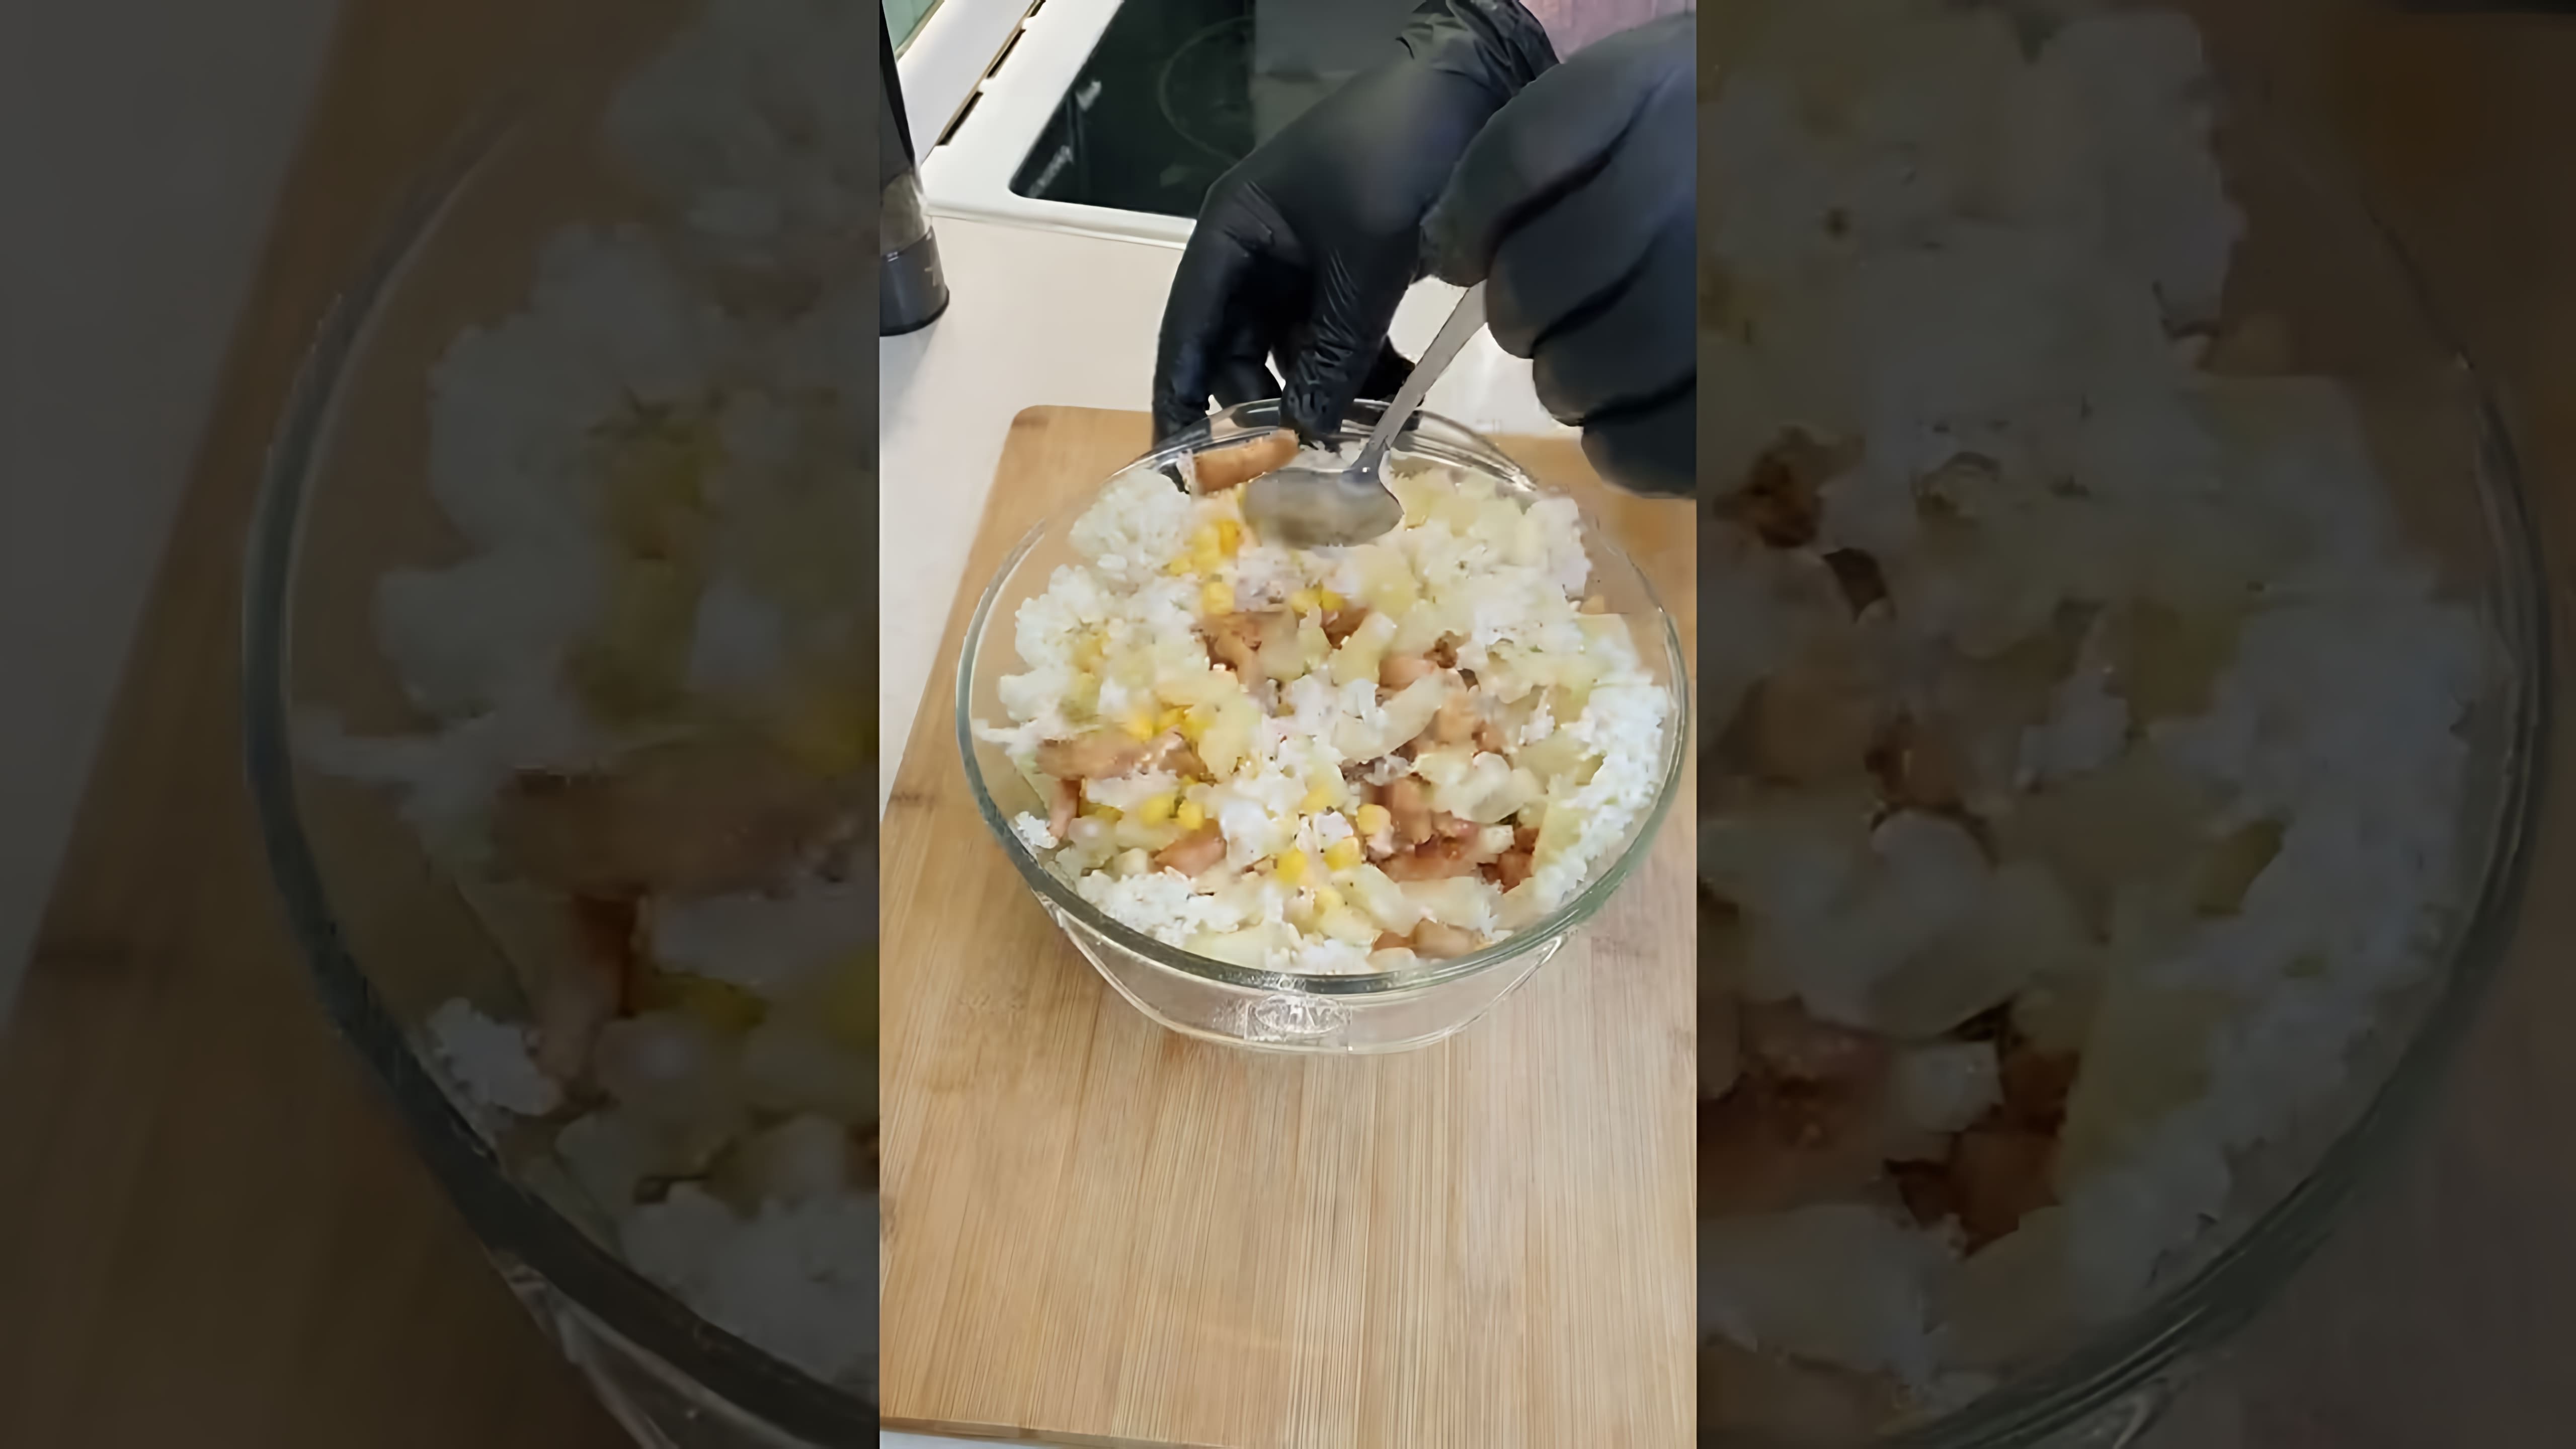 В этом видео демонстрируется процесс приготовления салата с ананасами, куриной грудкой и рисом